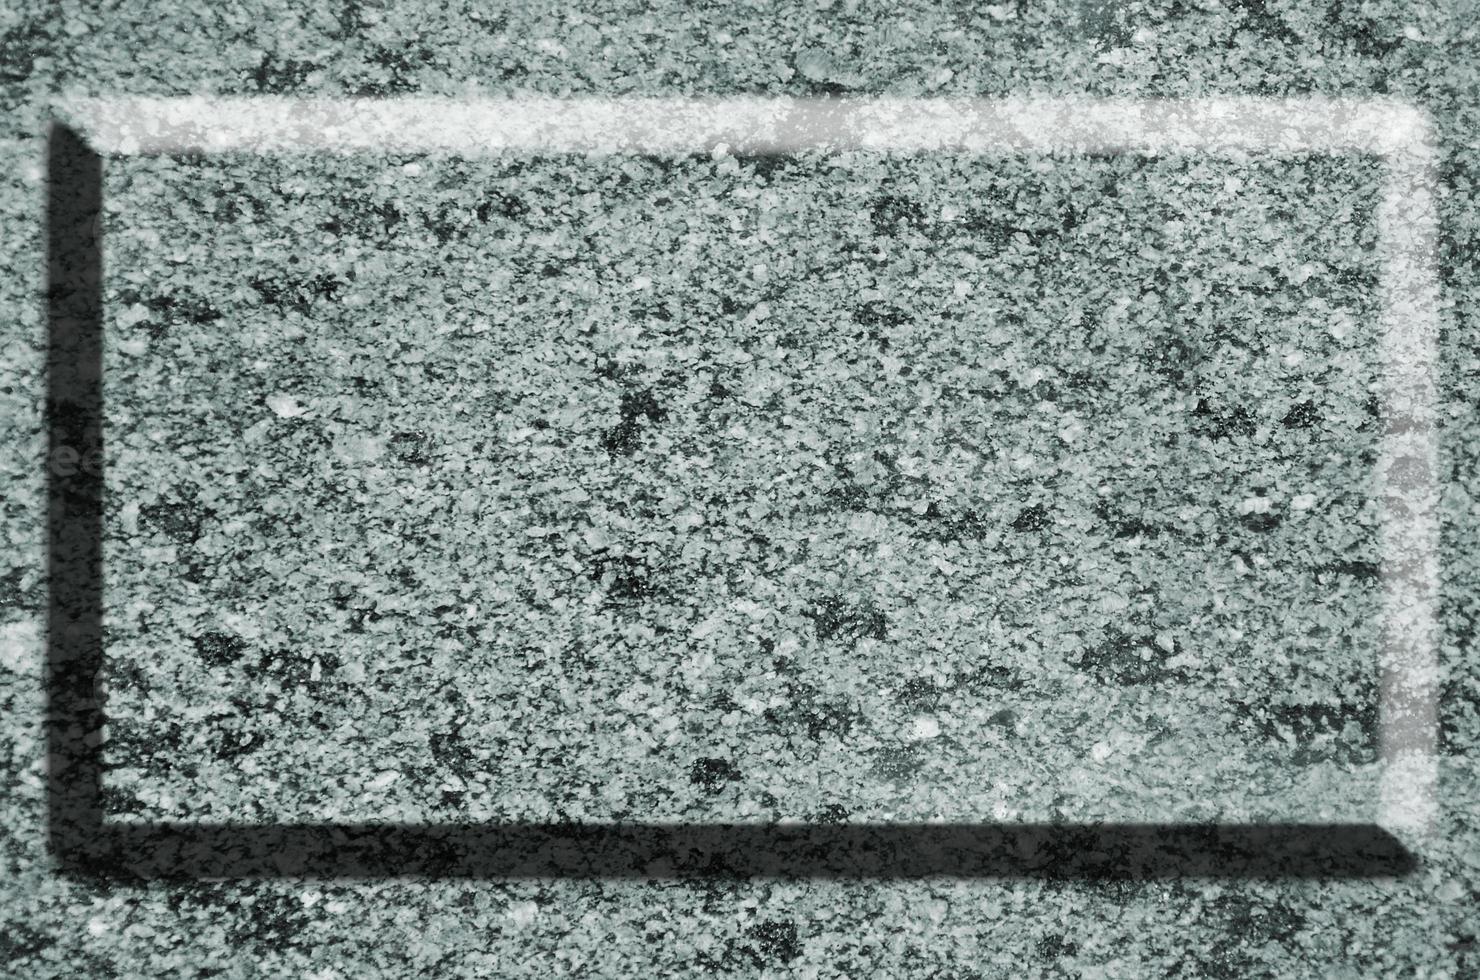 textura monocromática da superfície do granito foto